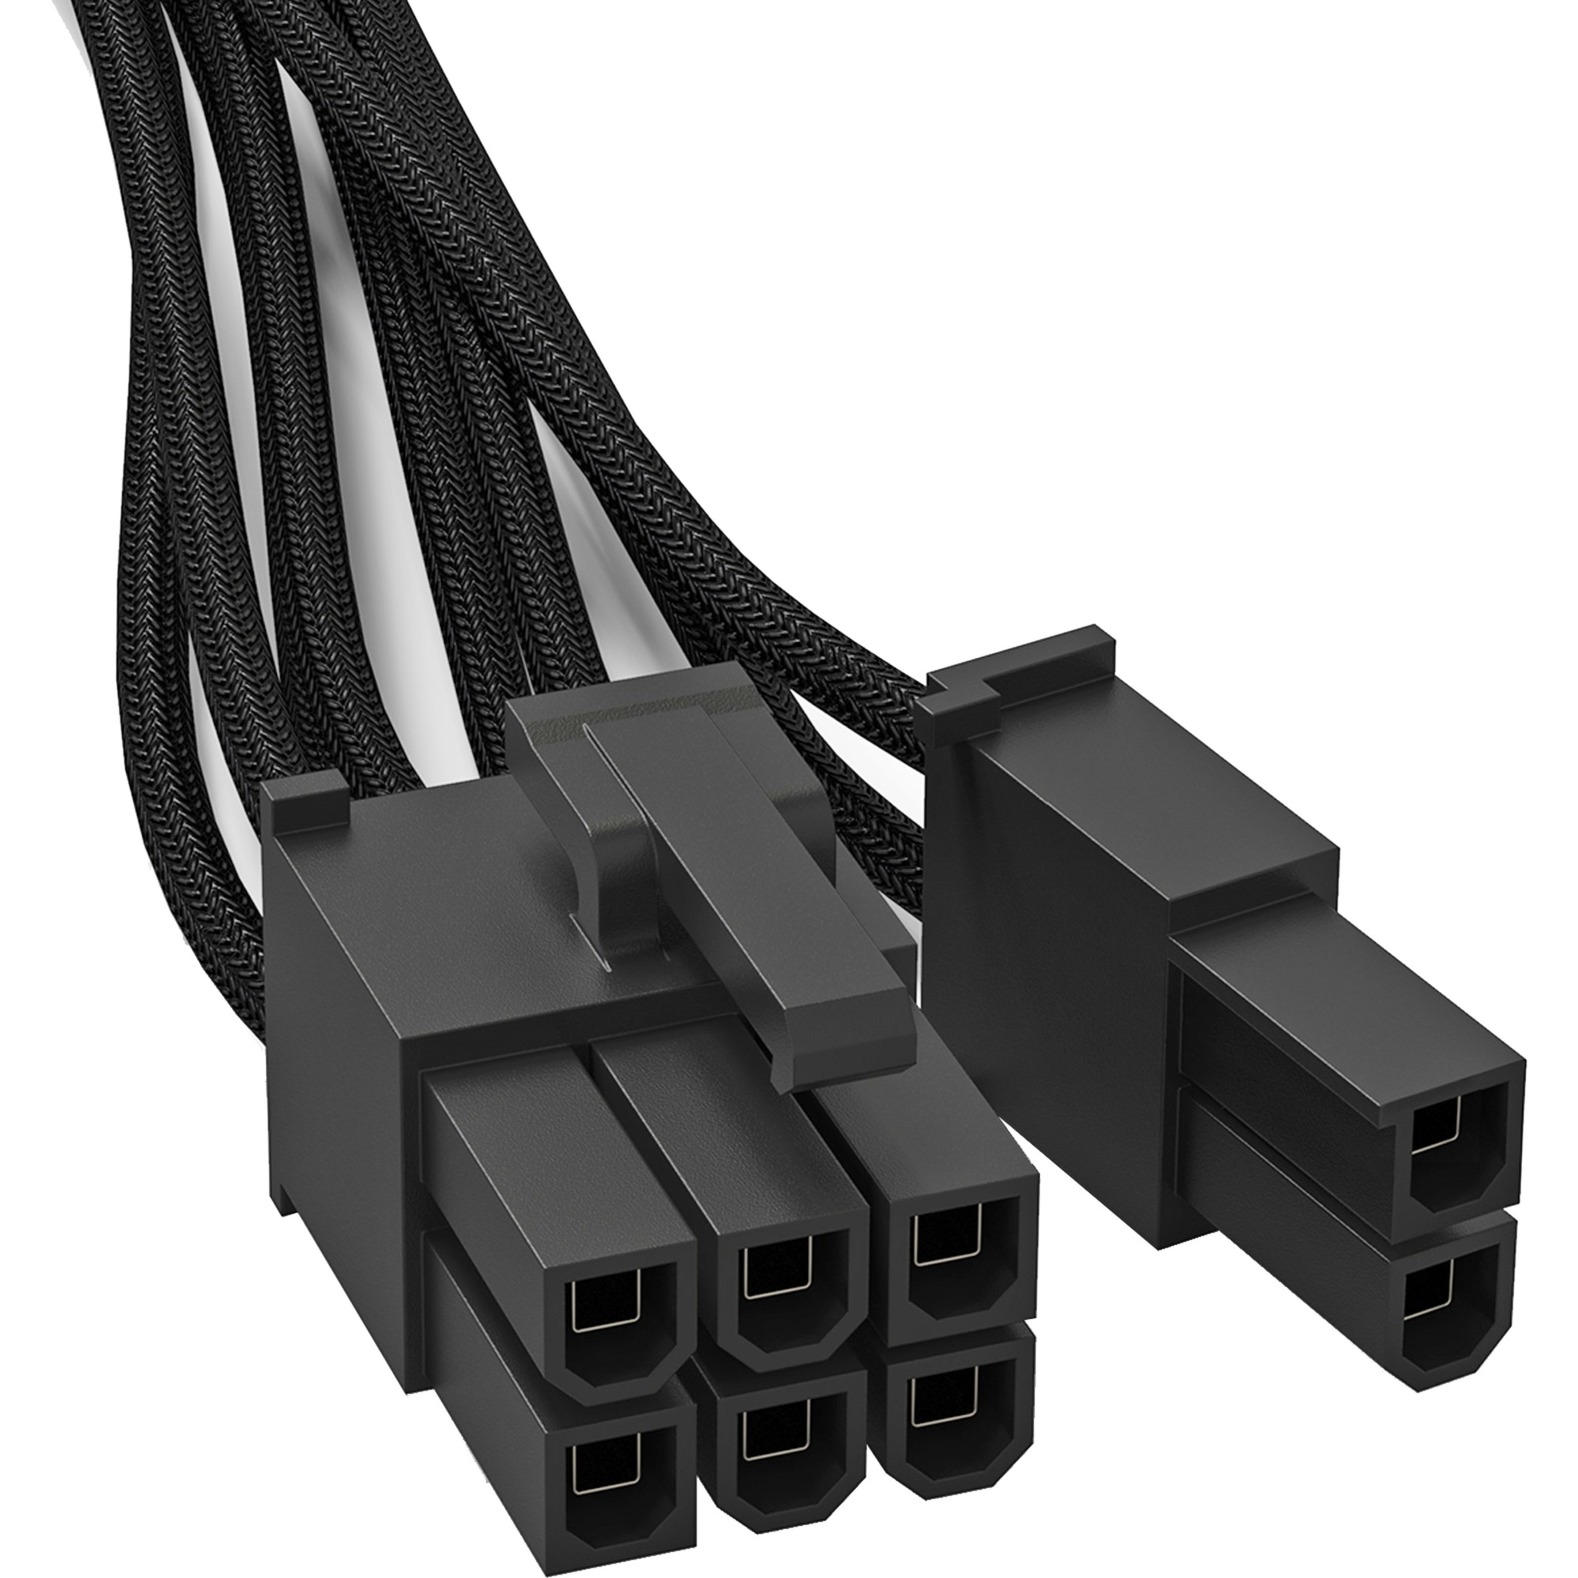 Image of Alternate - Power Kabel CP-6610 1x PCle 6 + 2 online einkaufen bei Alternate